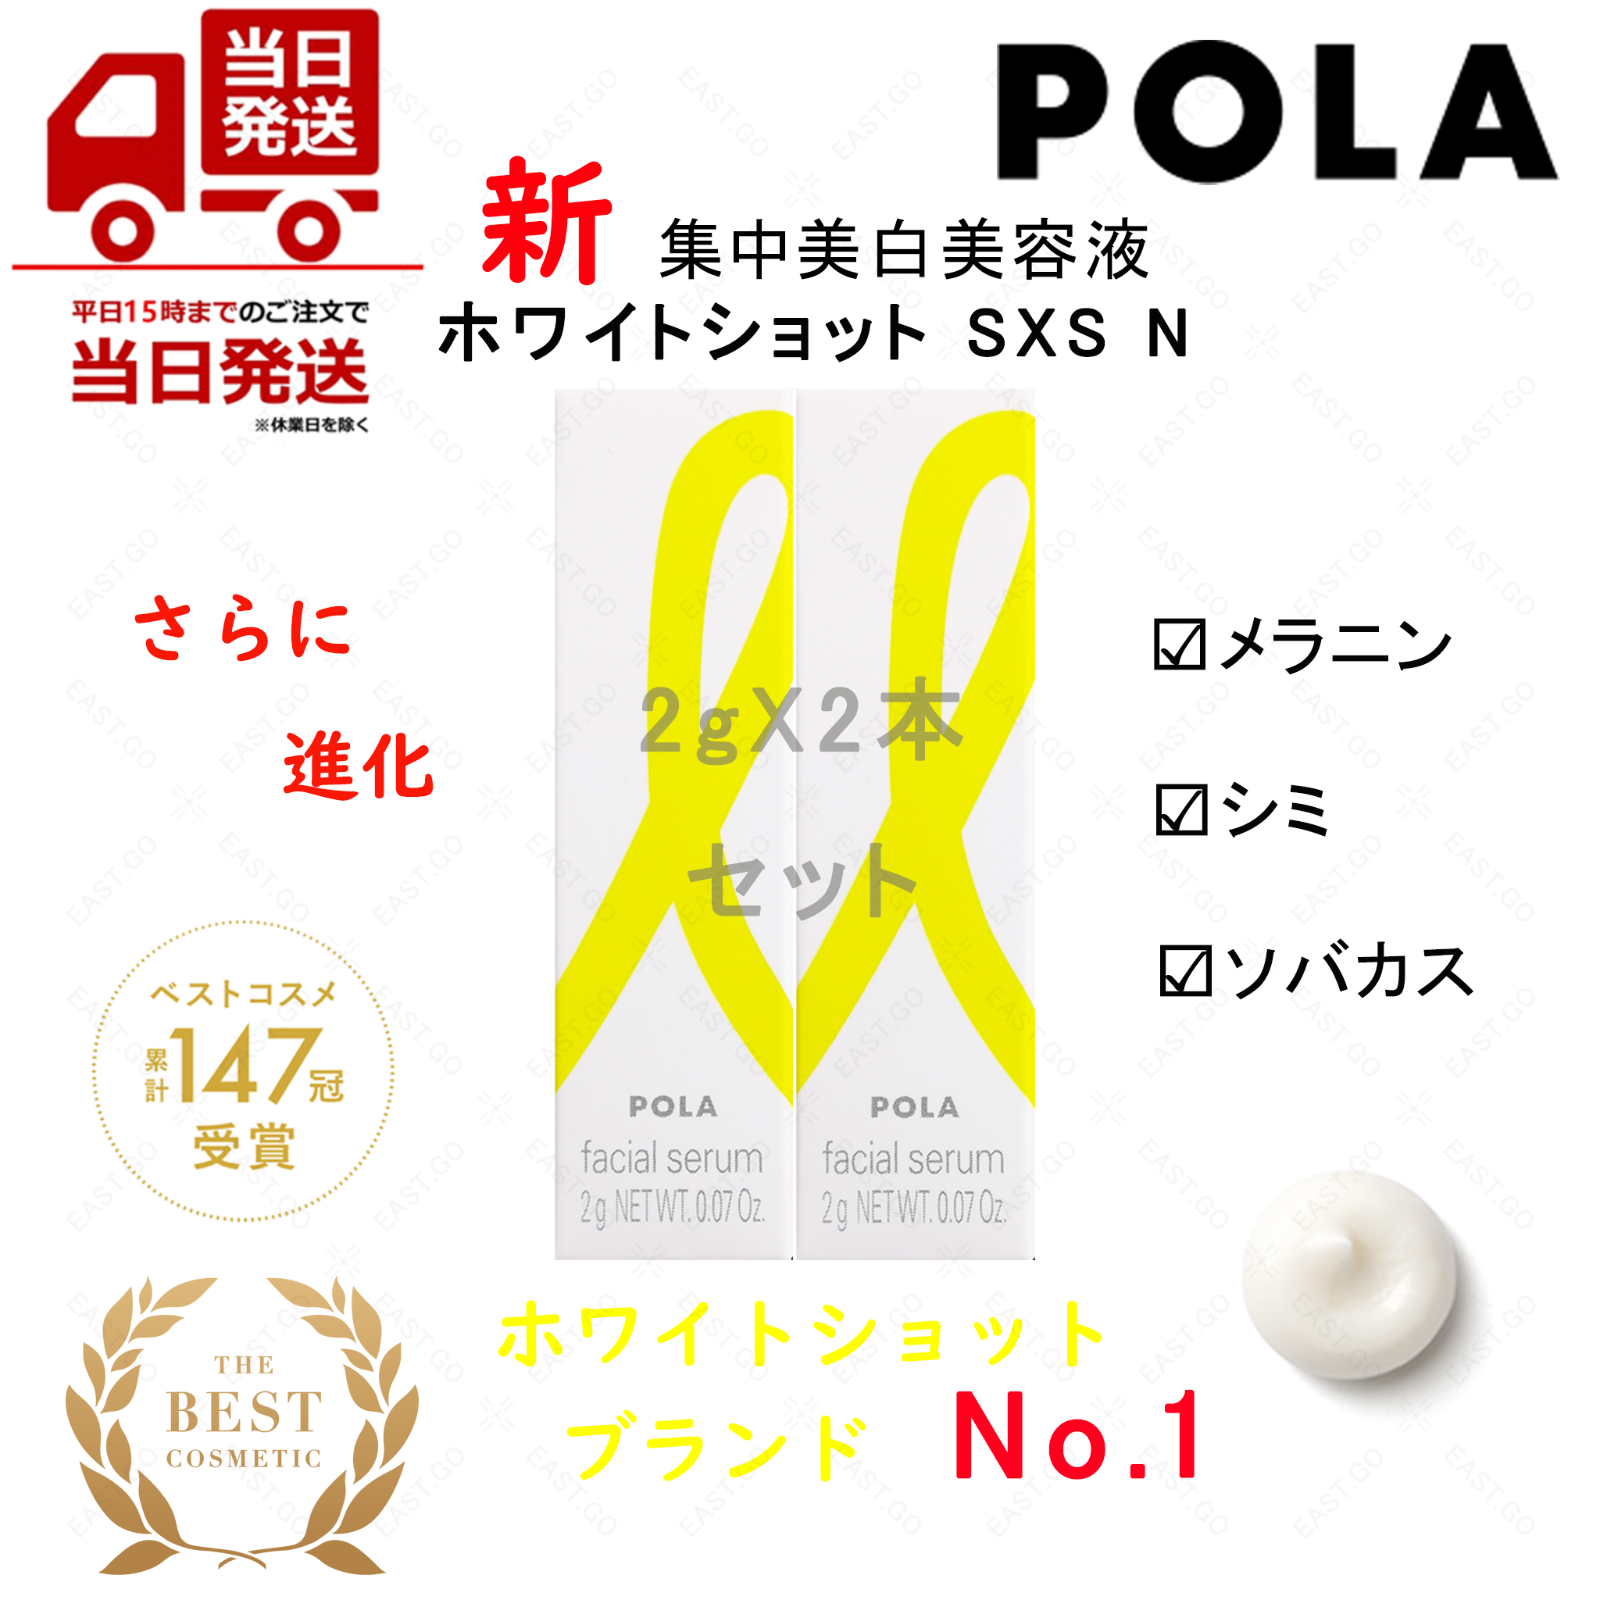 1月新商品 POLA ホワイトショットSXS 2gX2個セット ¥1,880円 - メルカリShops